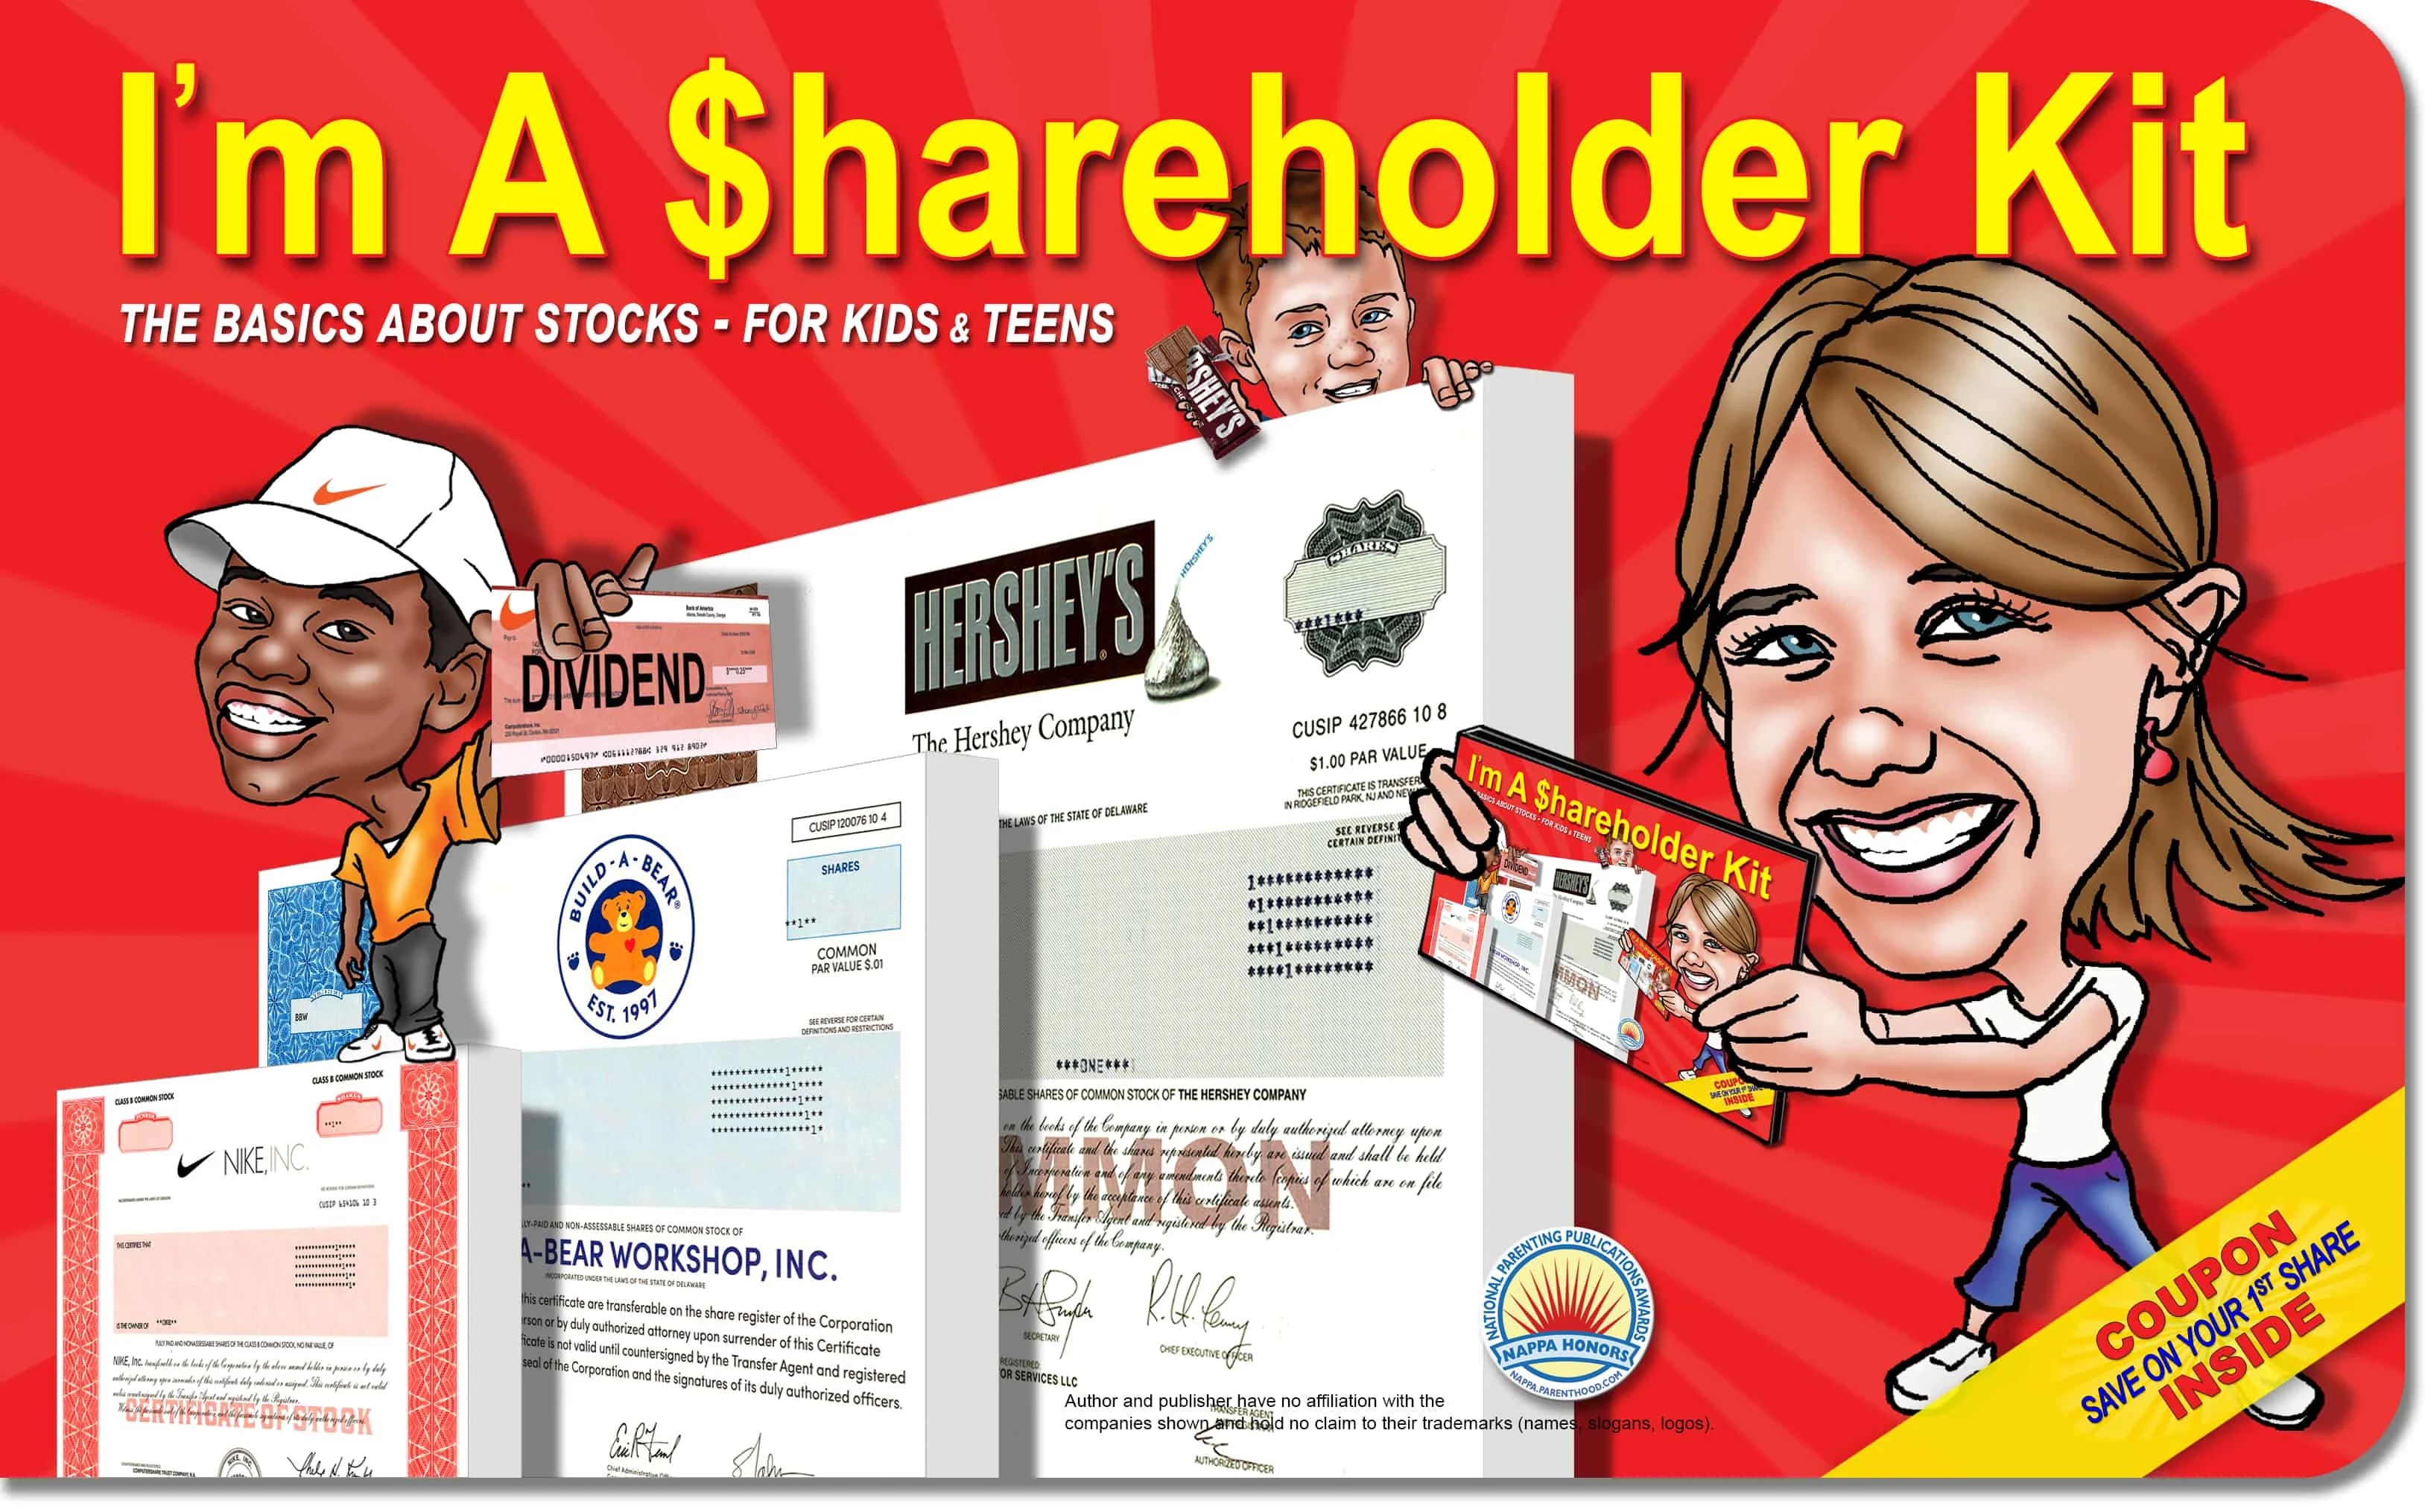 screenshot of I'm a Shareholder Kit cover - investing for kids